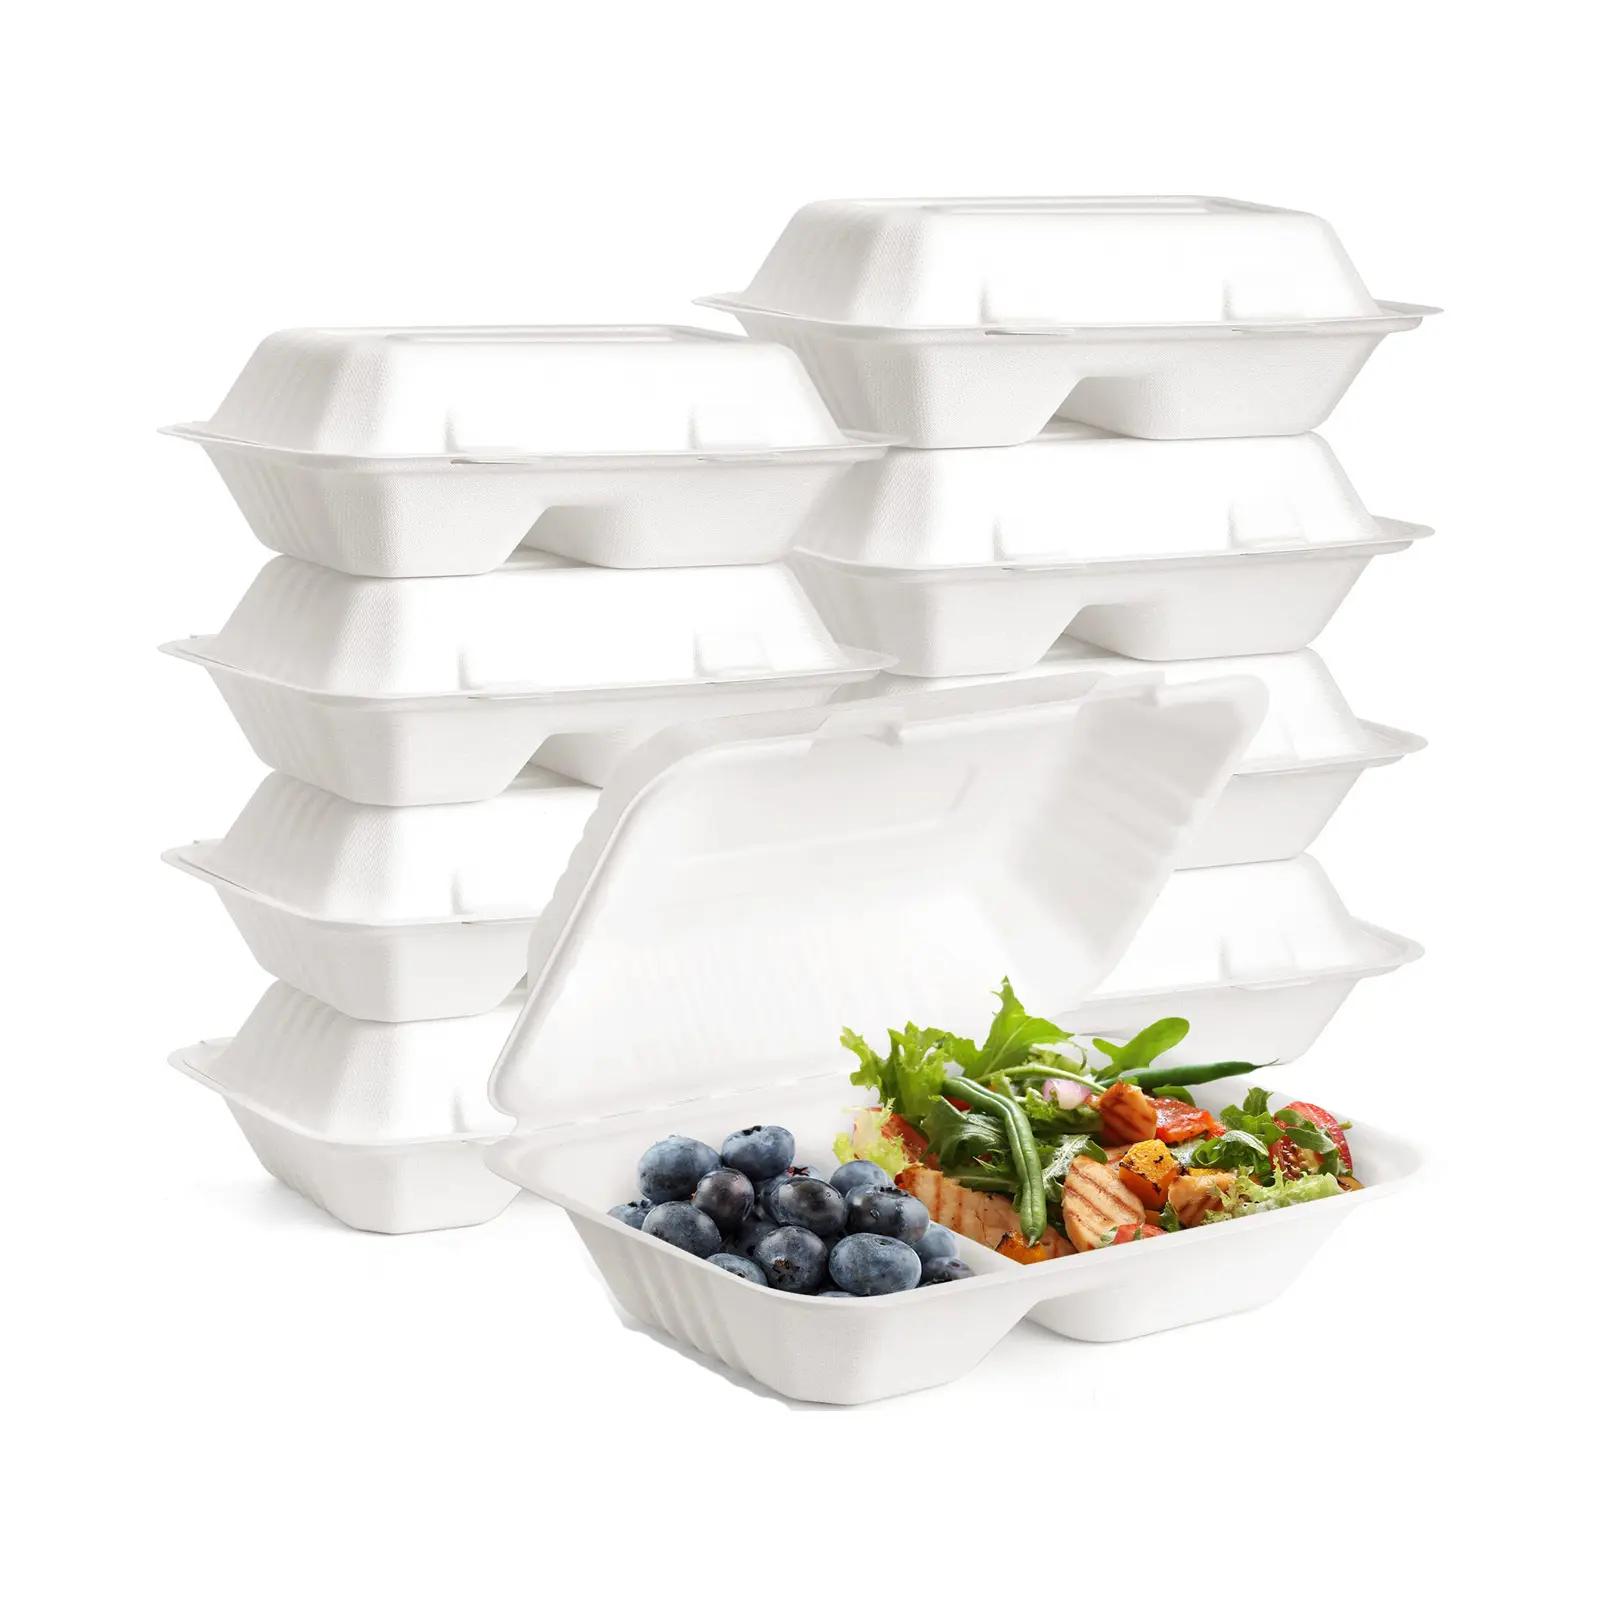 حاوية طعام للطعام قابلة للتحلل الحيوي صندوق قصب السكر الأبيض/الطبيعي مع قسمين